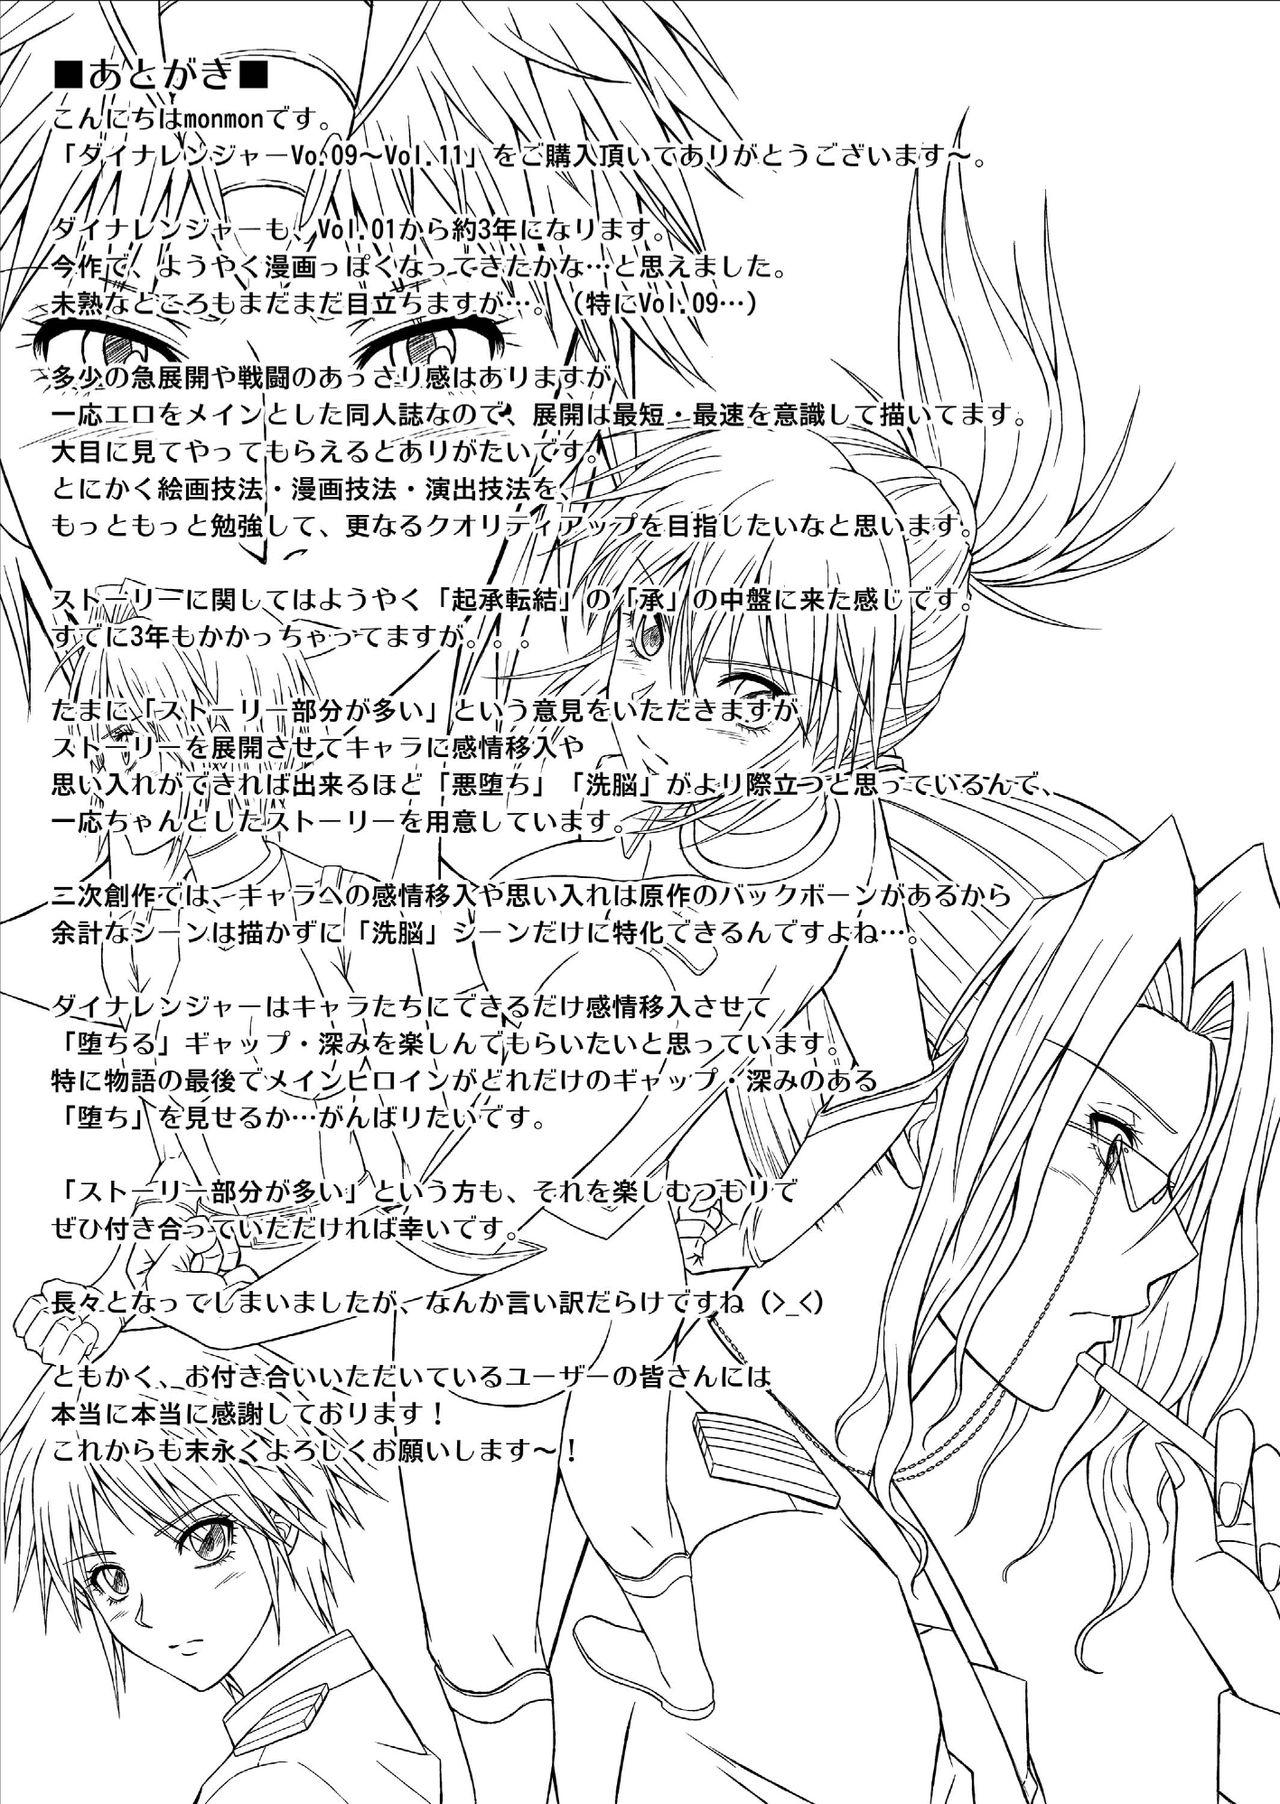 Brazilian [MACXE'S (monmon)] Tokubousentai Dinaranger ~Heroine Kairaku Sennou Keikaku~ Vol. 09-11 [Chinese] - Original Gay Uniform - Page 91